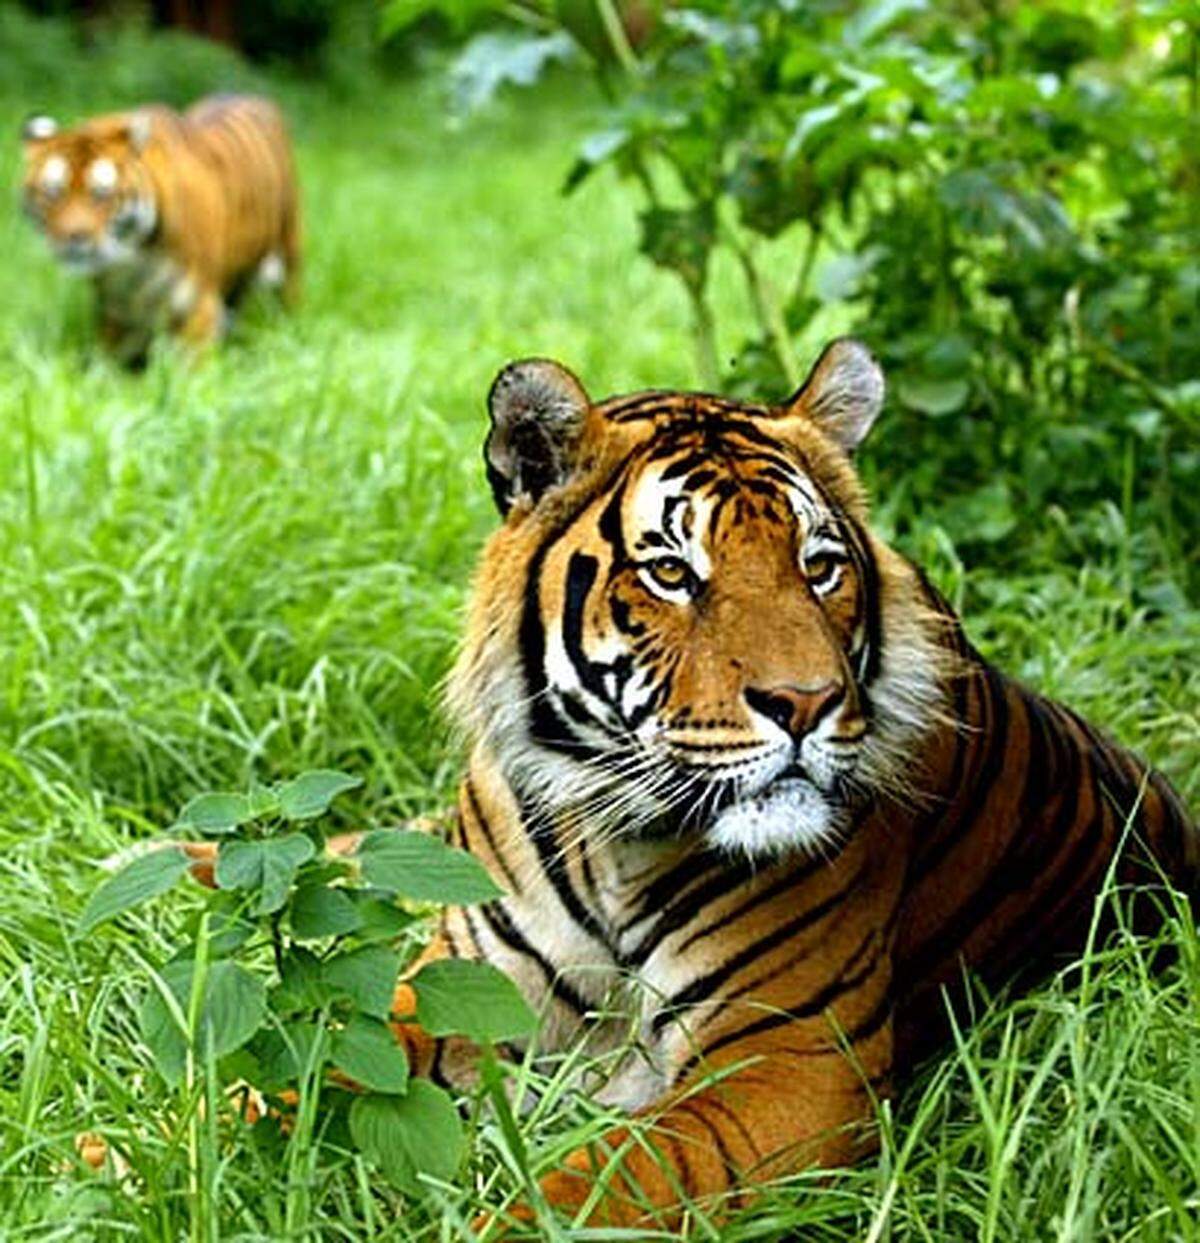 Vor 100 Jahren streiften noch 100.000 Tiger durch die Wälder von der Türkei bis Russland. Heute gibt es nur noch 5000 Exemplare weltweit, Tendenz fallend. Drei von acht Unterarten wurden bereits ausgelöscht. 2000 Königstiger streifen noch durch die Urwälder des indischen Subkontinents. Dass die Tiger dieses Jahrhundert in freier Wildbahn überleben, ist unwahrscheinlich.